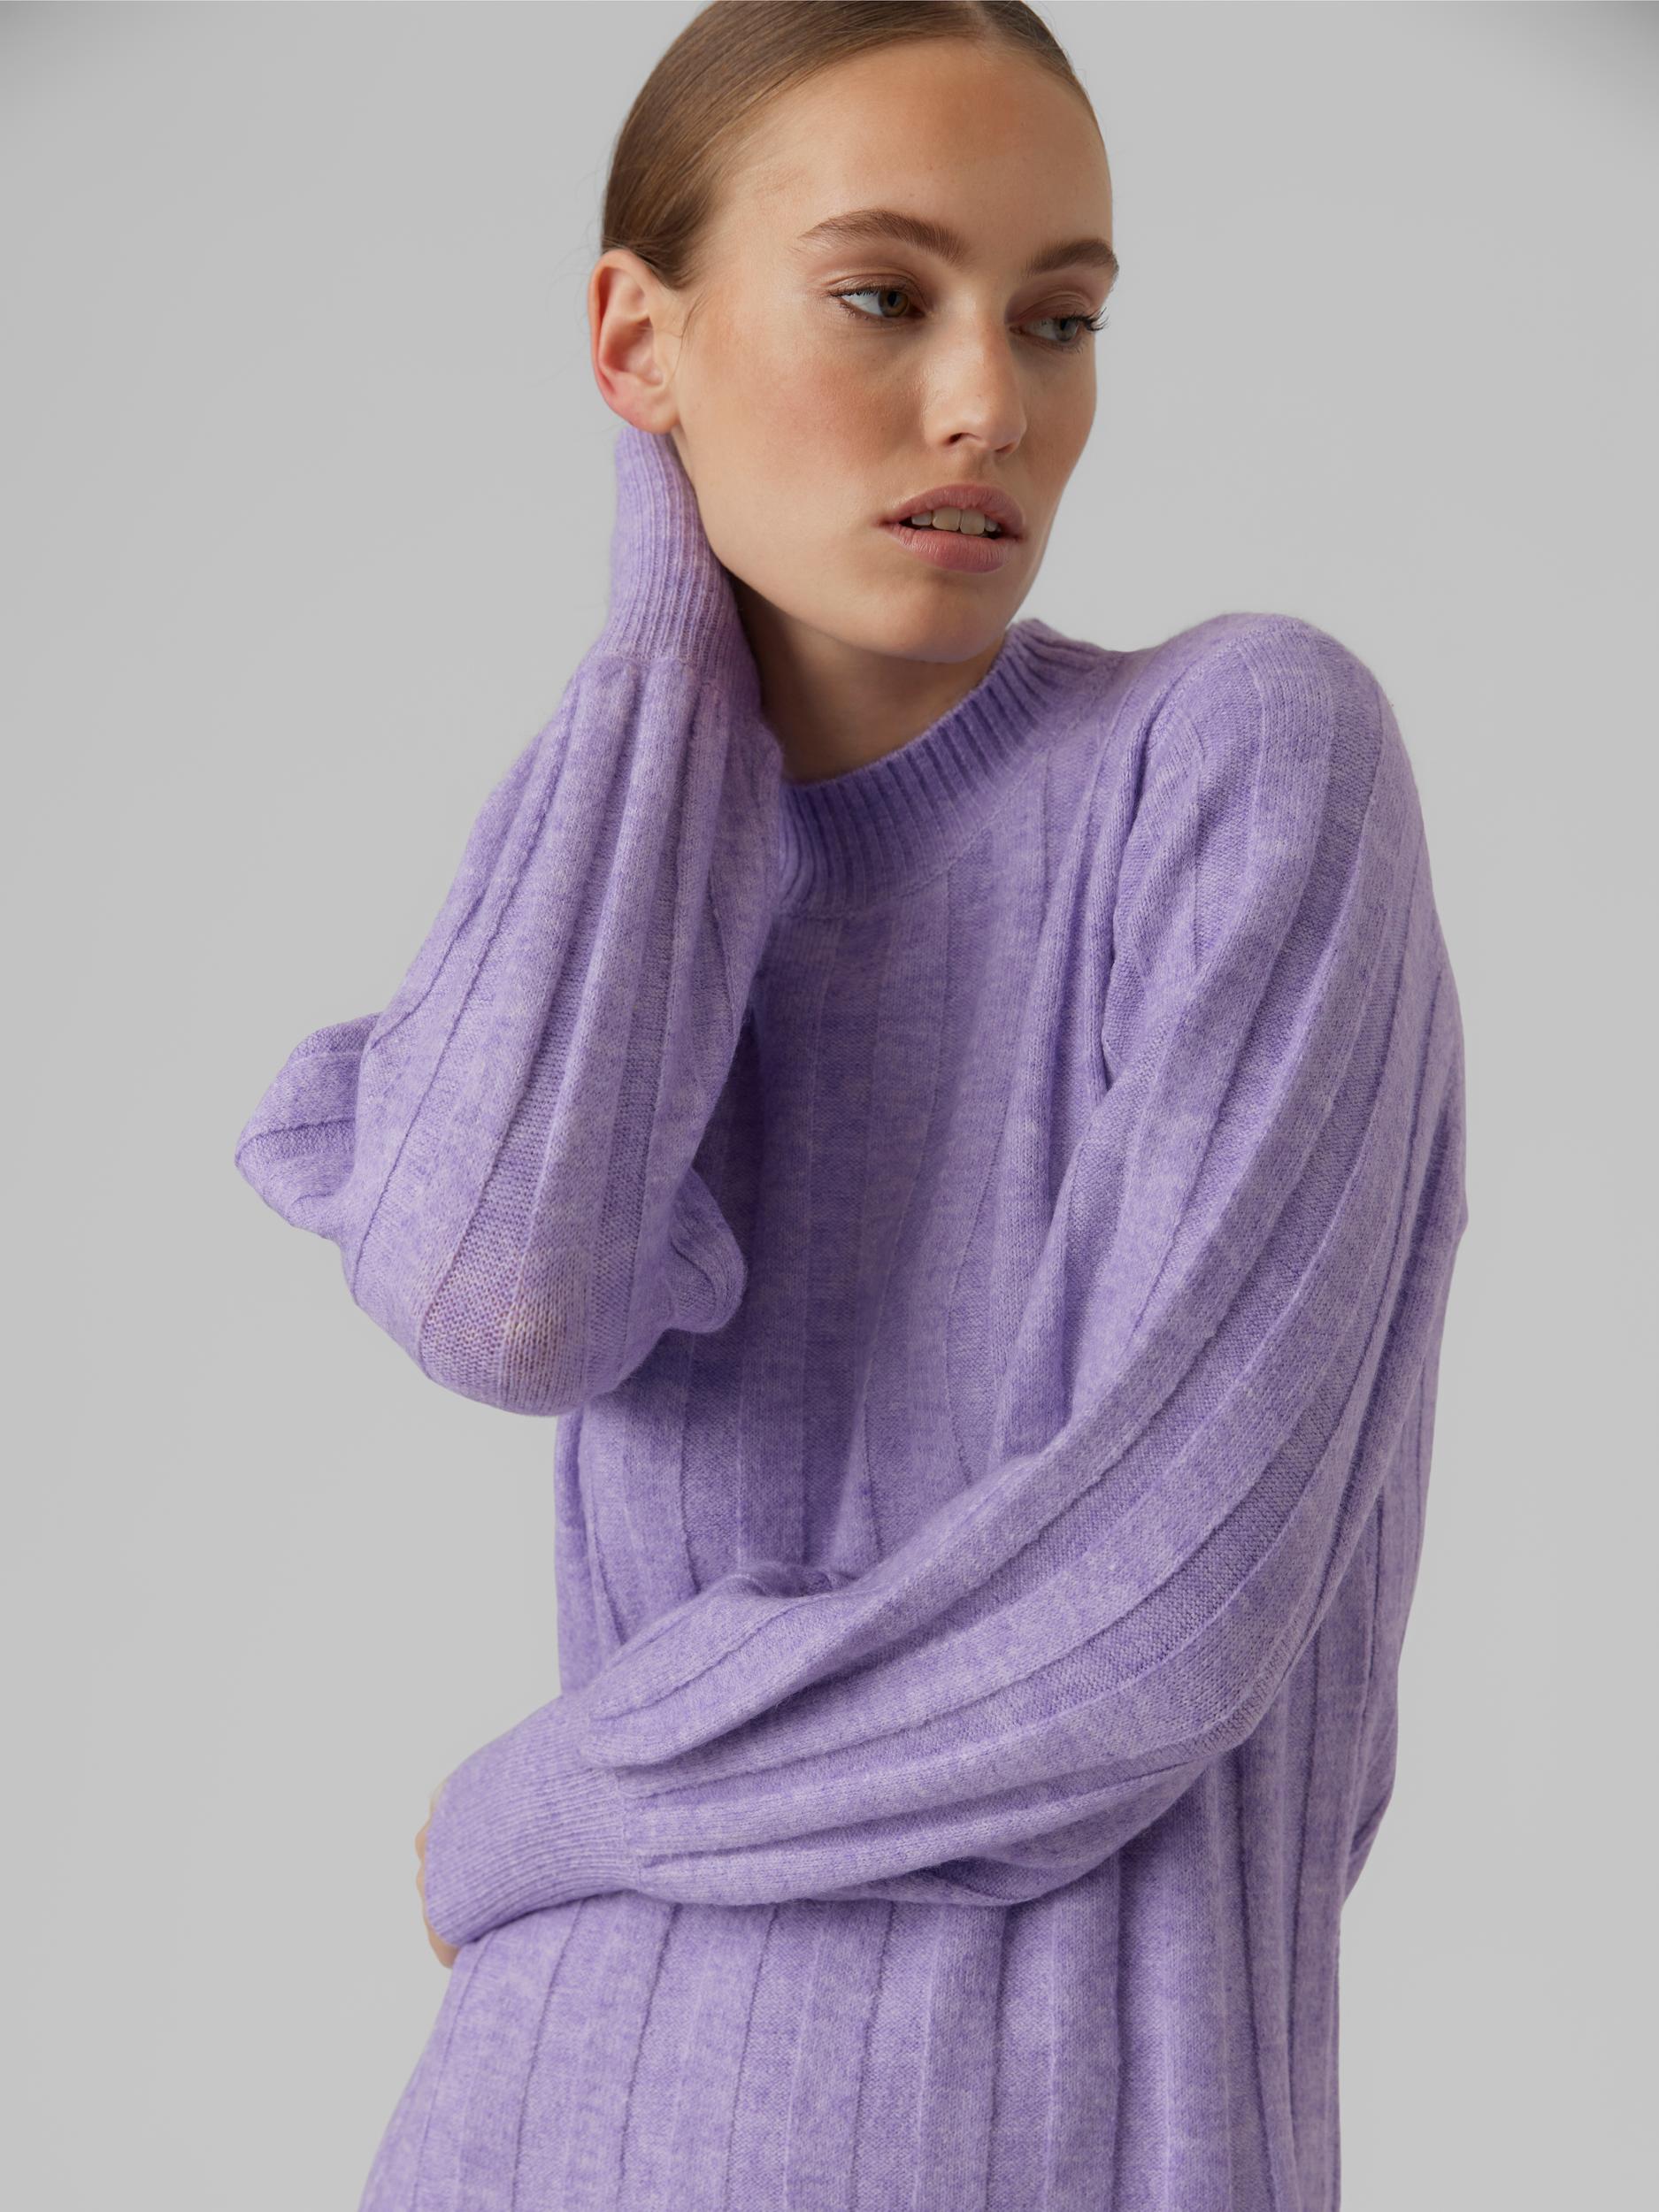 FINAL SALE- Alanis short knitted dress, VIOLA, large